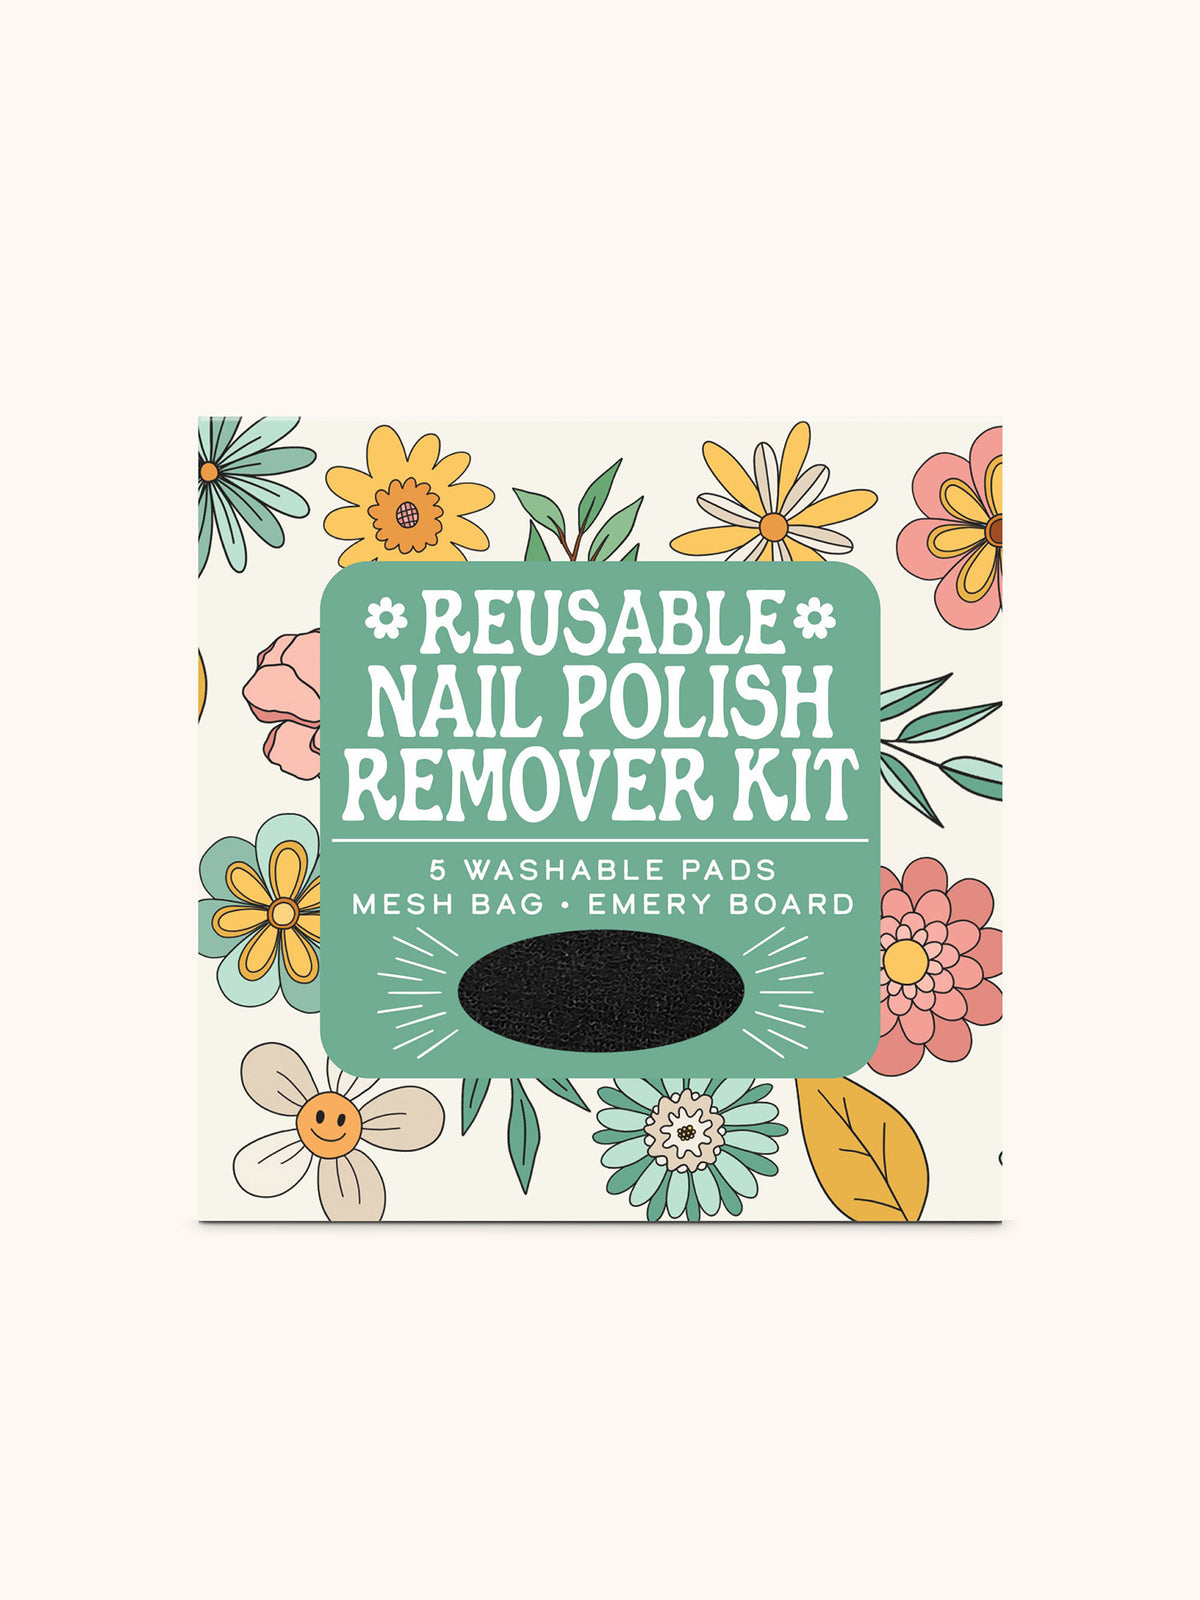 Beamin' Blooms Reusable Nail Polish Remover Kit